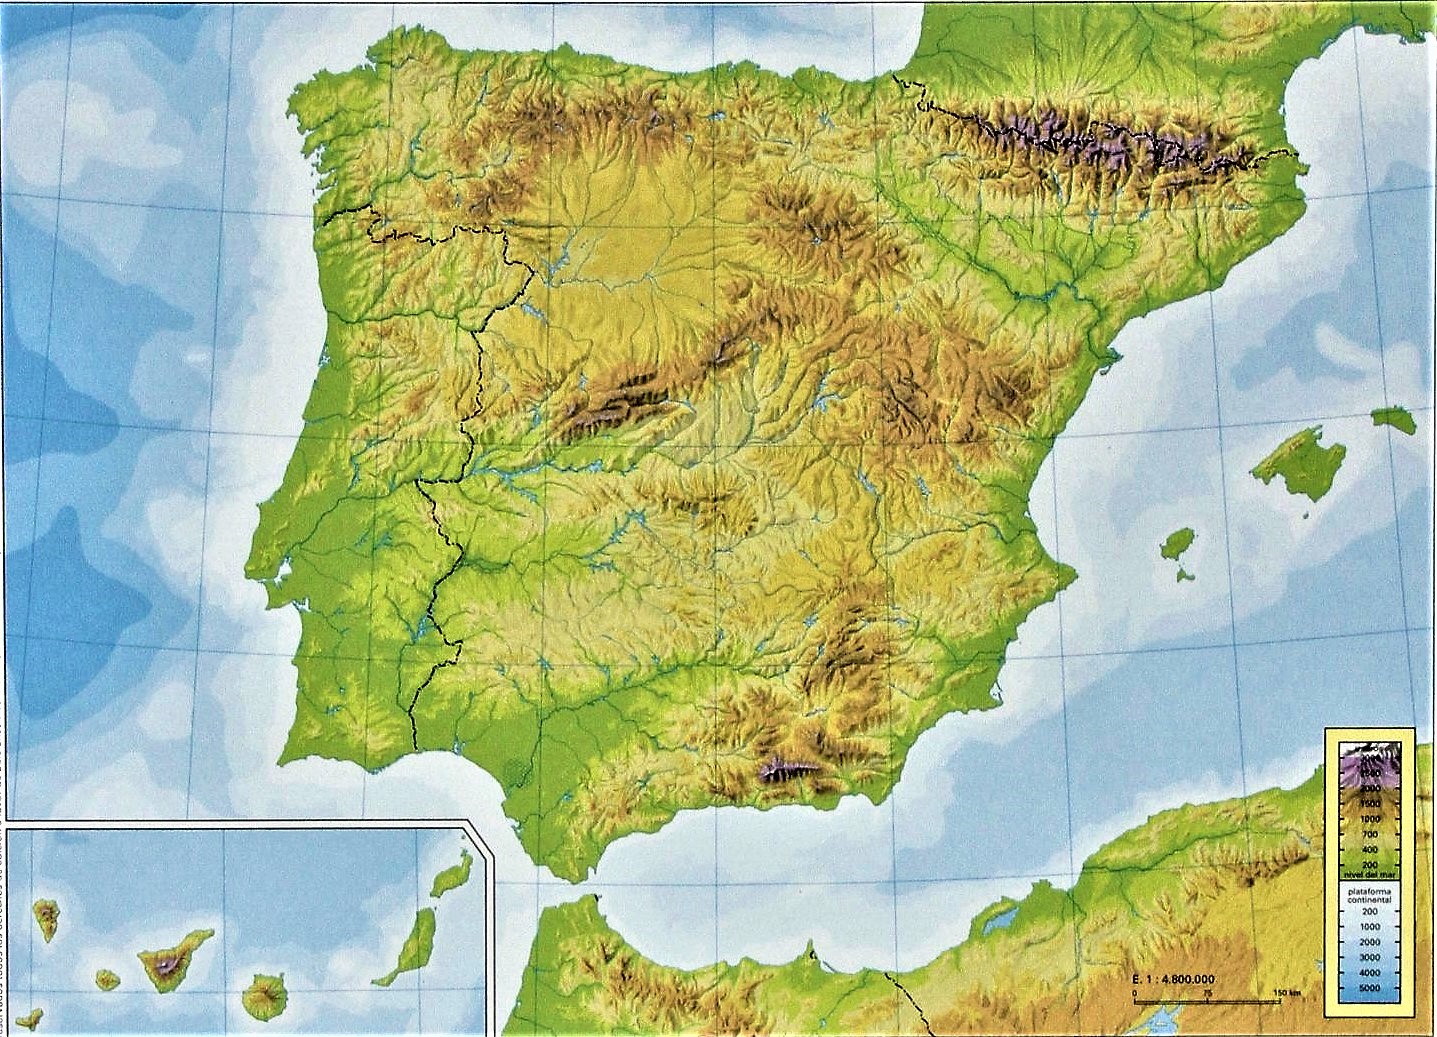 Juegos de Geografía | Juego de Unidades de relieve de España | Cerebriti